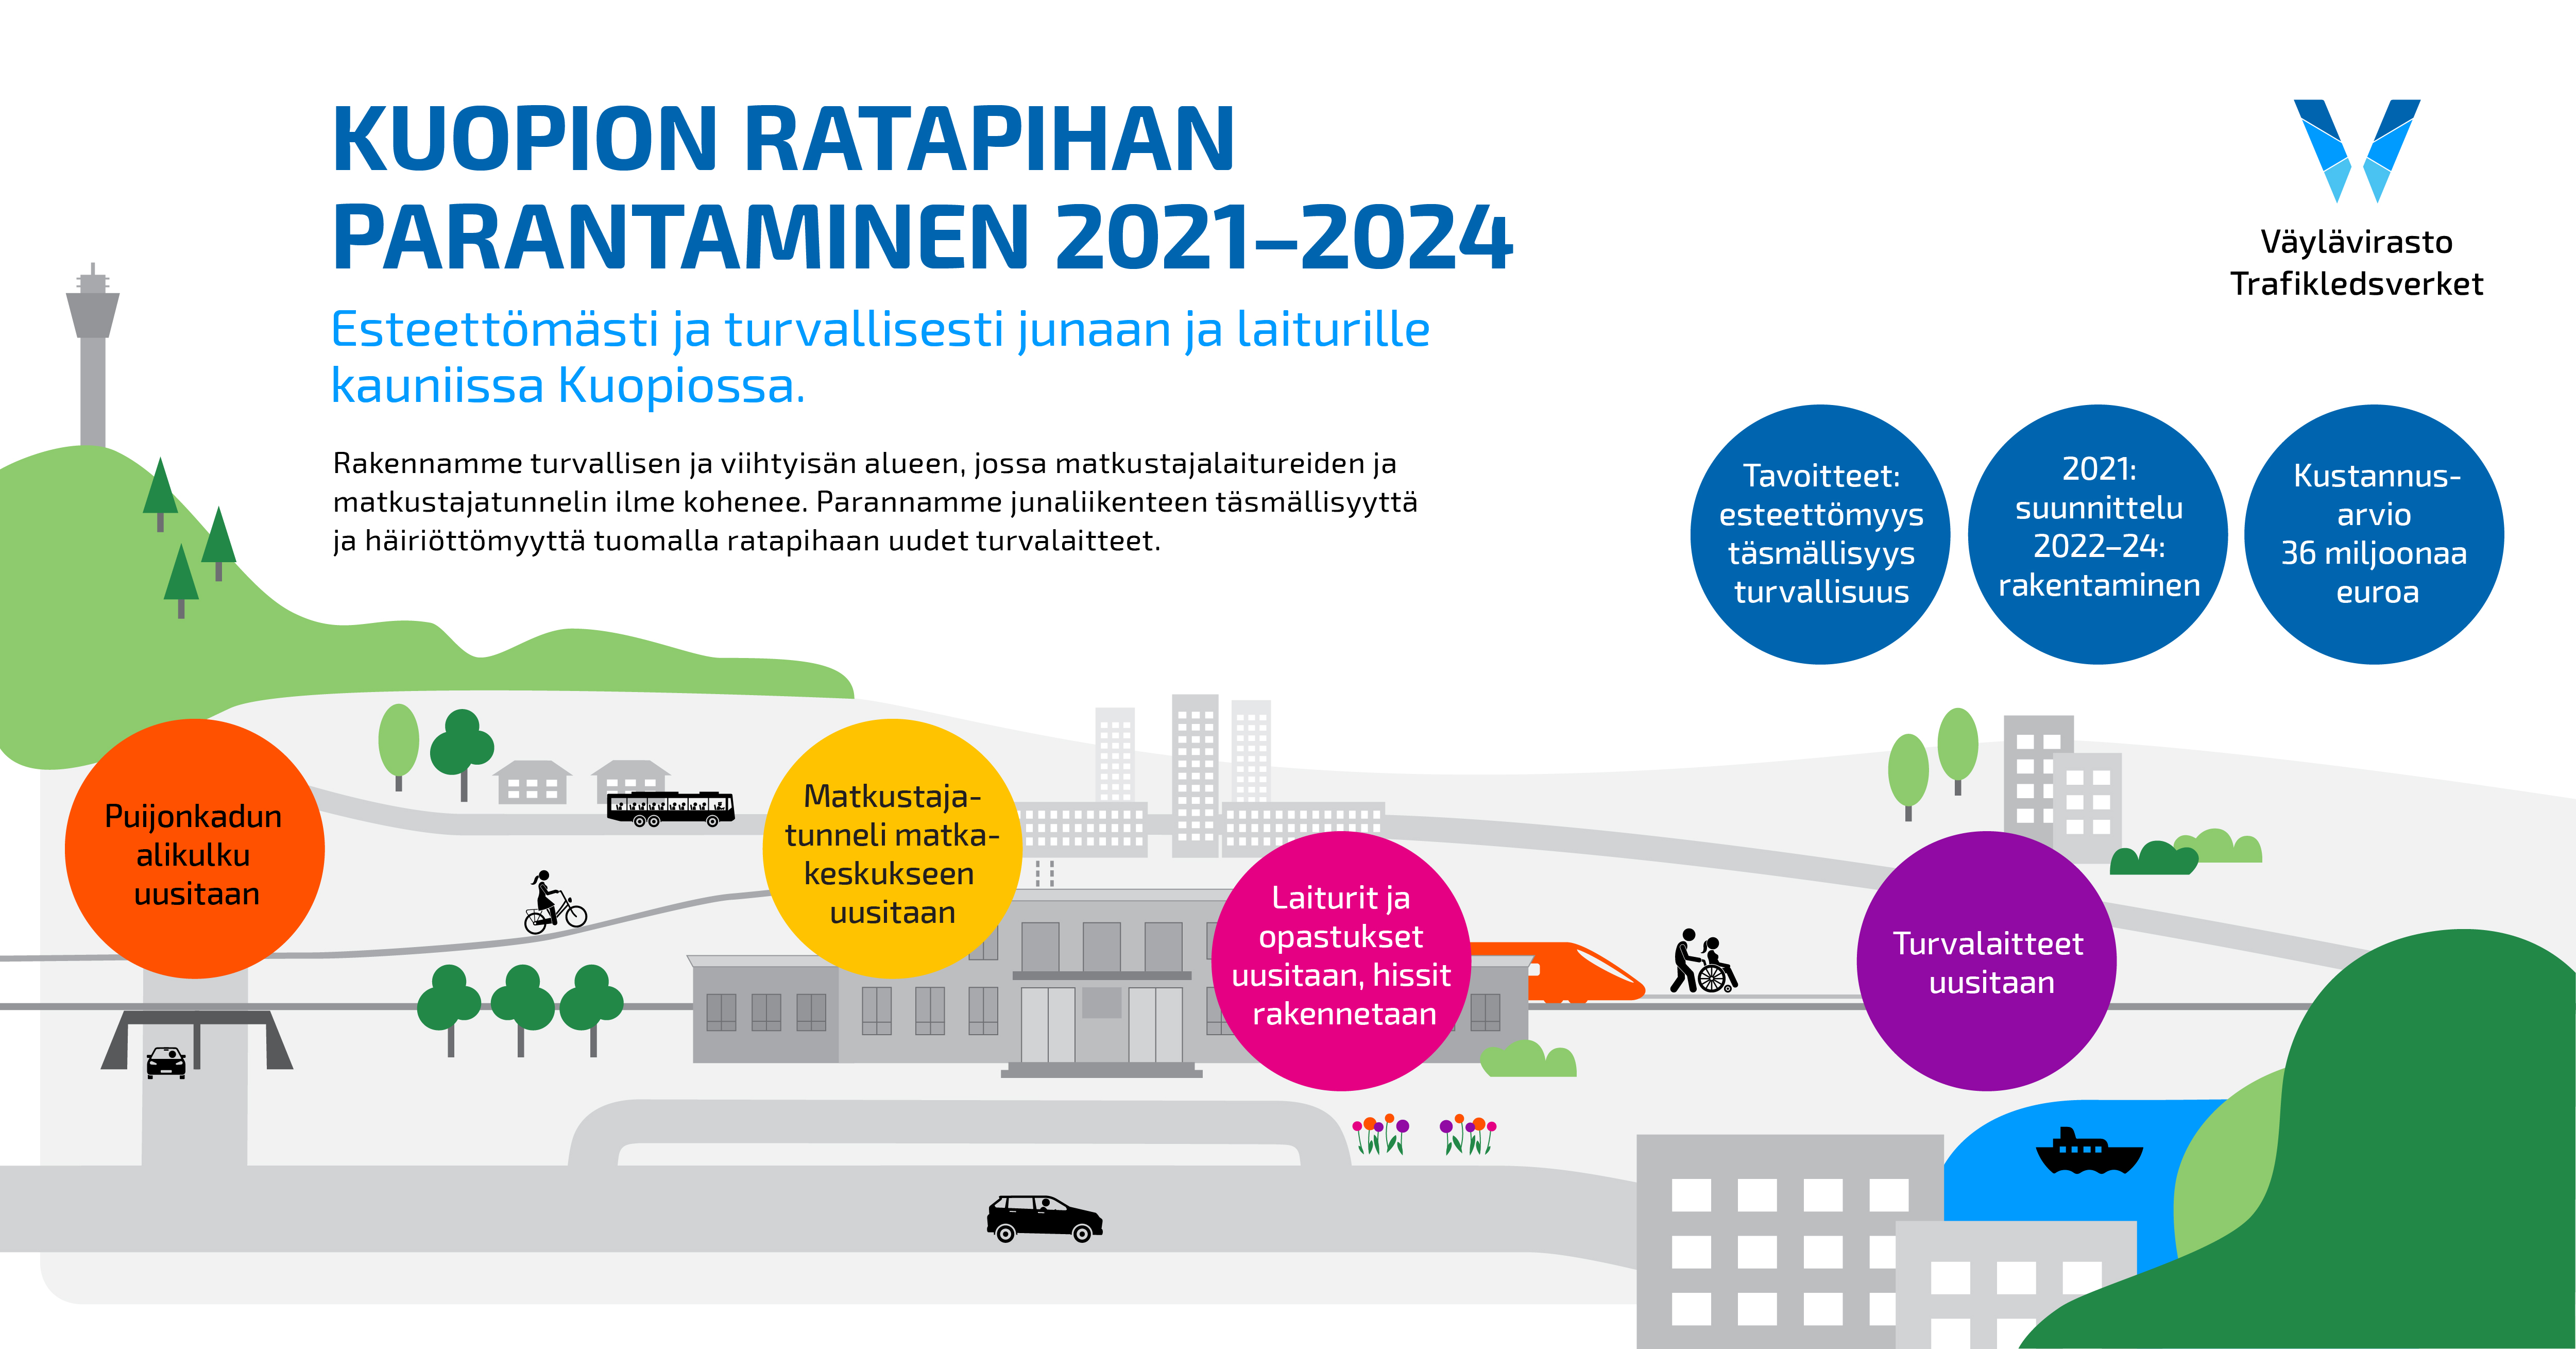 Kuopion ratapiha -hankkeen infografiikkakuvituskuva, jossa näkyy koko hankealue ja siinä luetellaan hankkeen tavoitteet